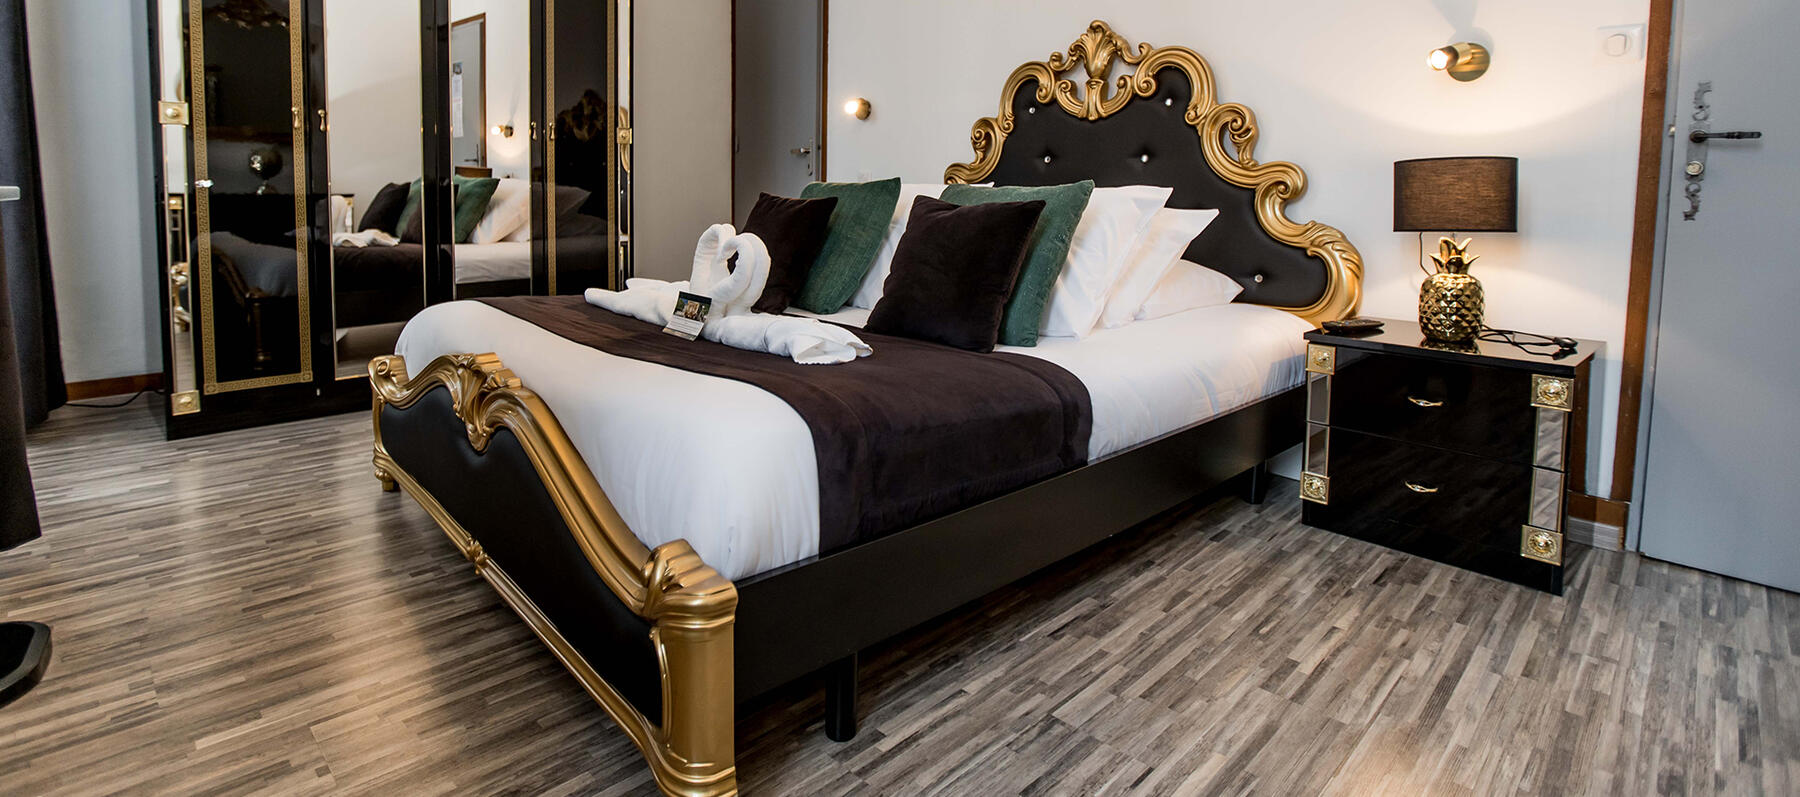 L'hôtel Saint-Sauveur propose des chambres récemment rénovées dans un ancien hôtel particulier à Meyrueis en Lozère